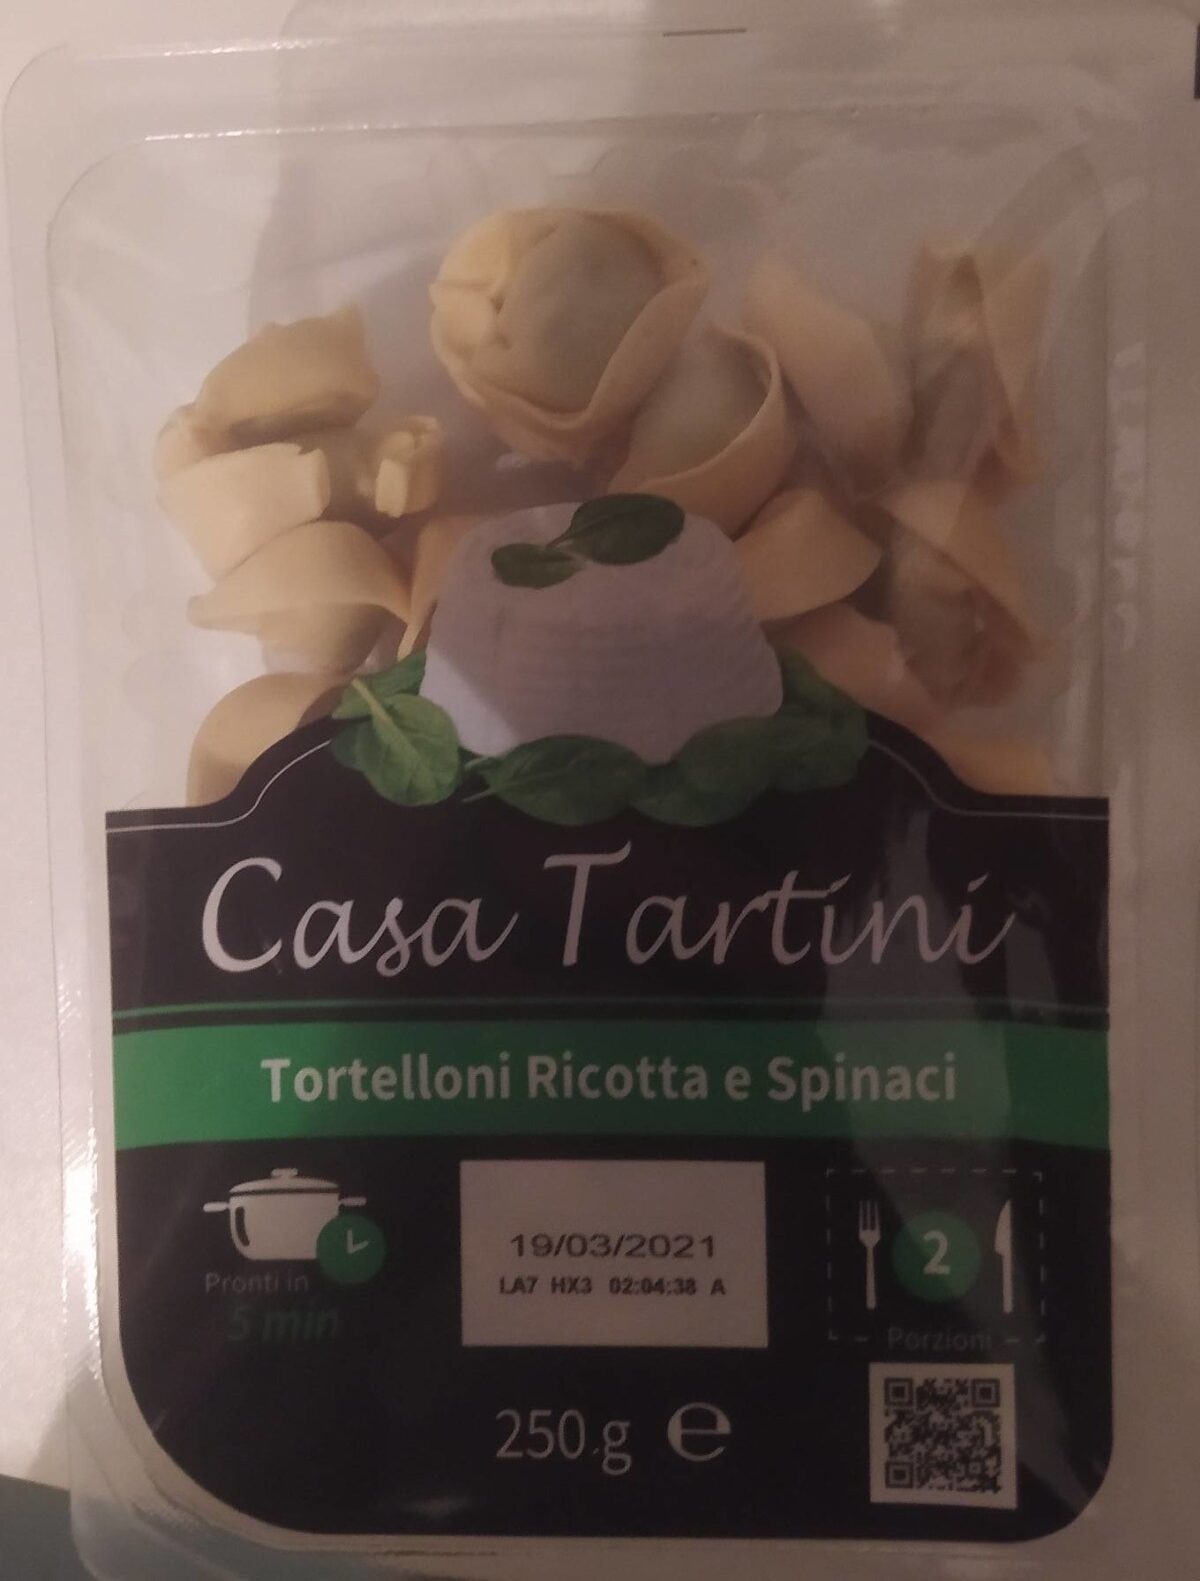 Tortelloni ricotta e spinaci - Product - it